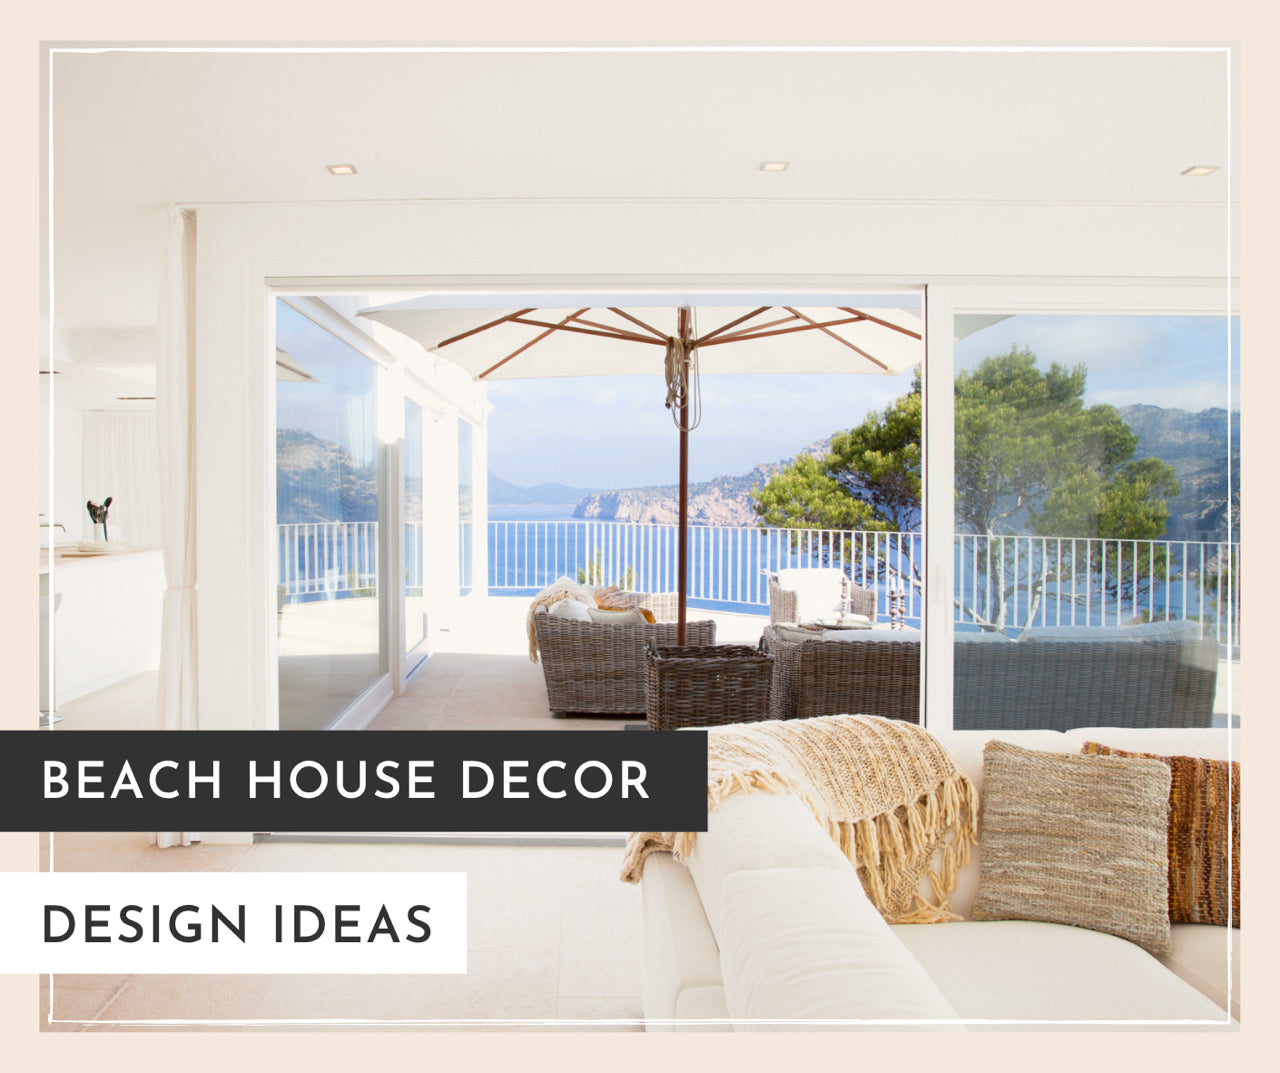 Beach House Decor and Design Ideas - MK Envision Galleries